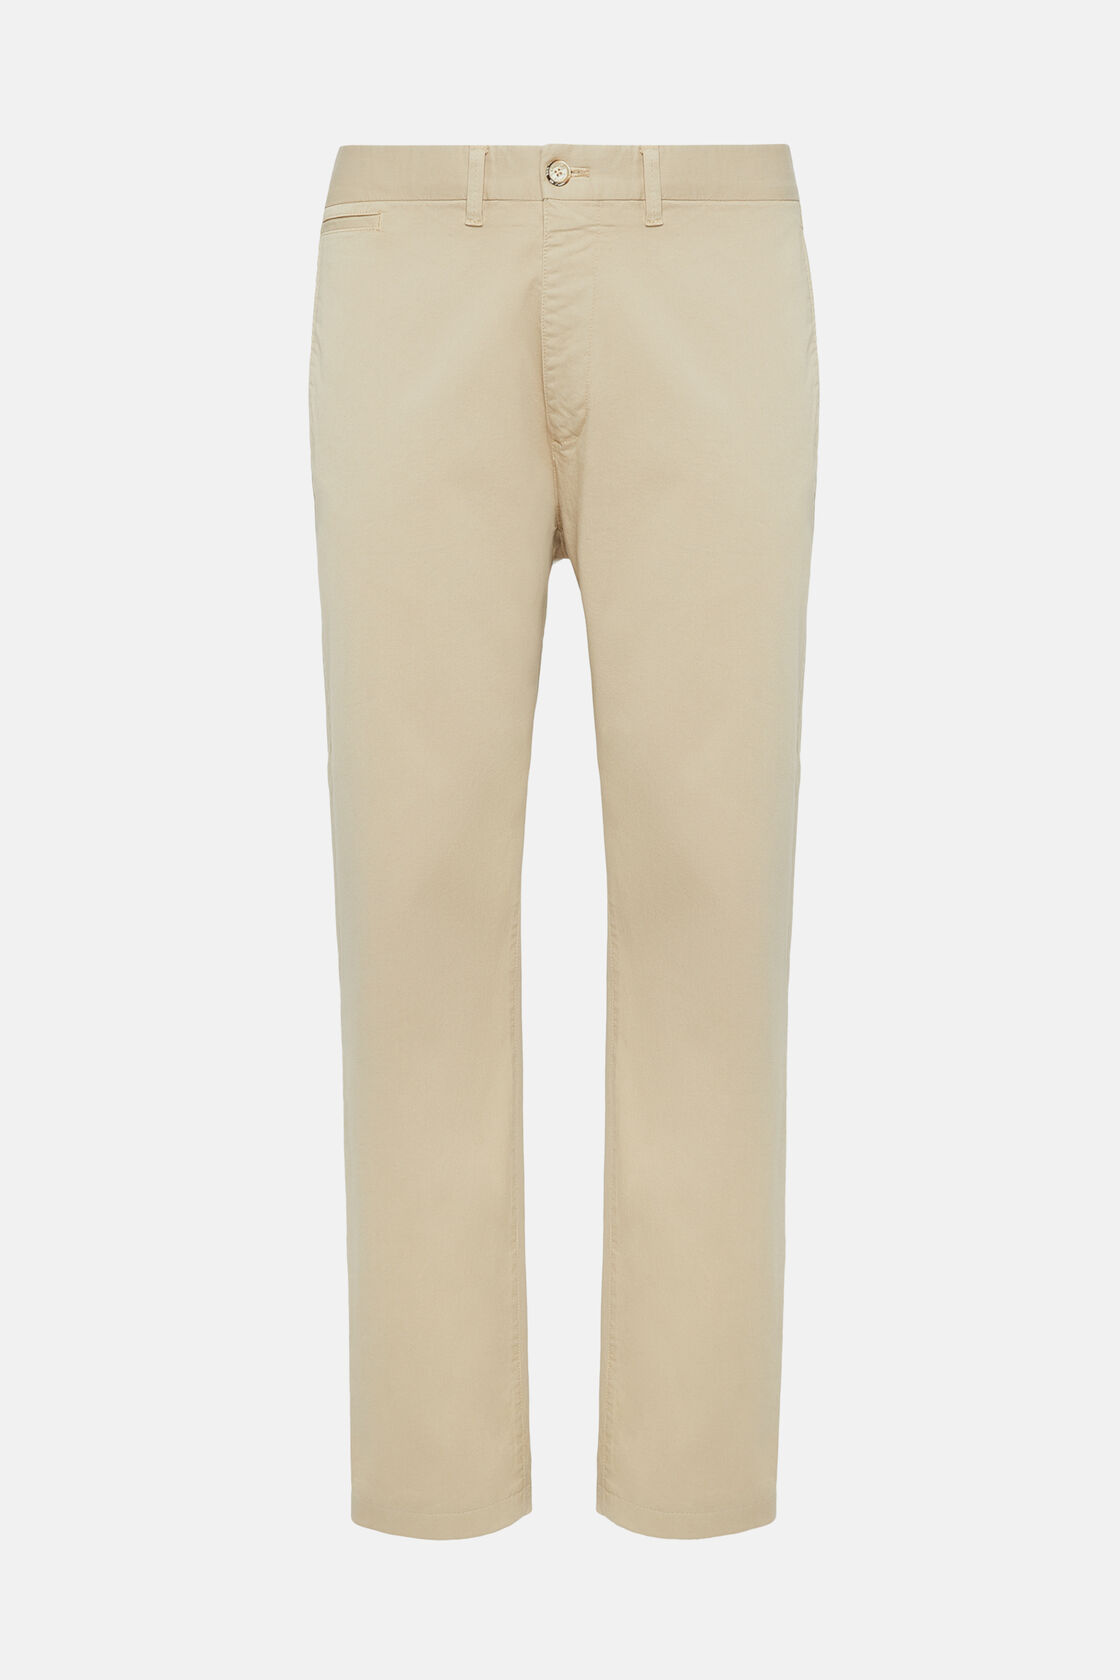 Pantalon En Coton Extensible, Beige, hi-res